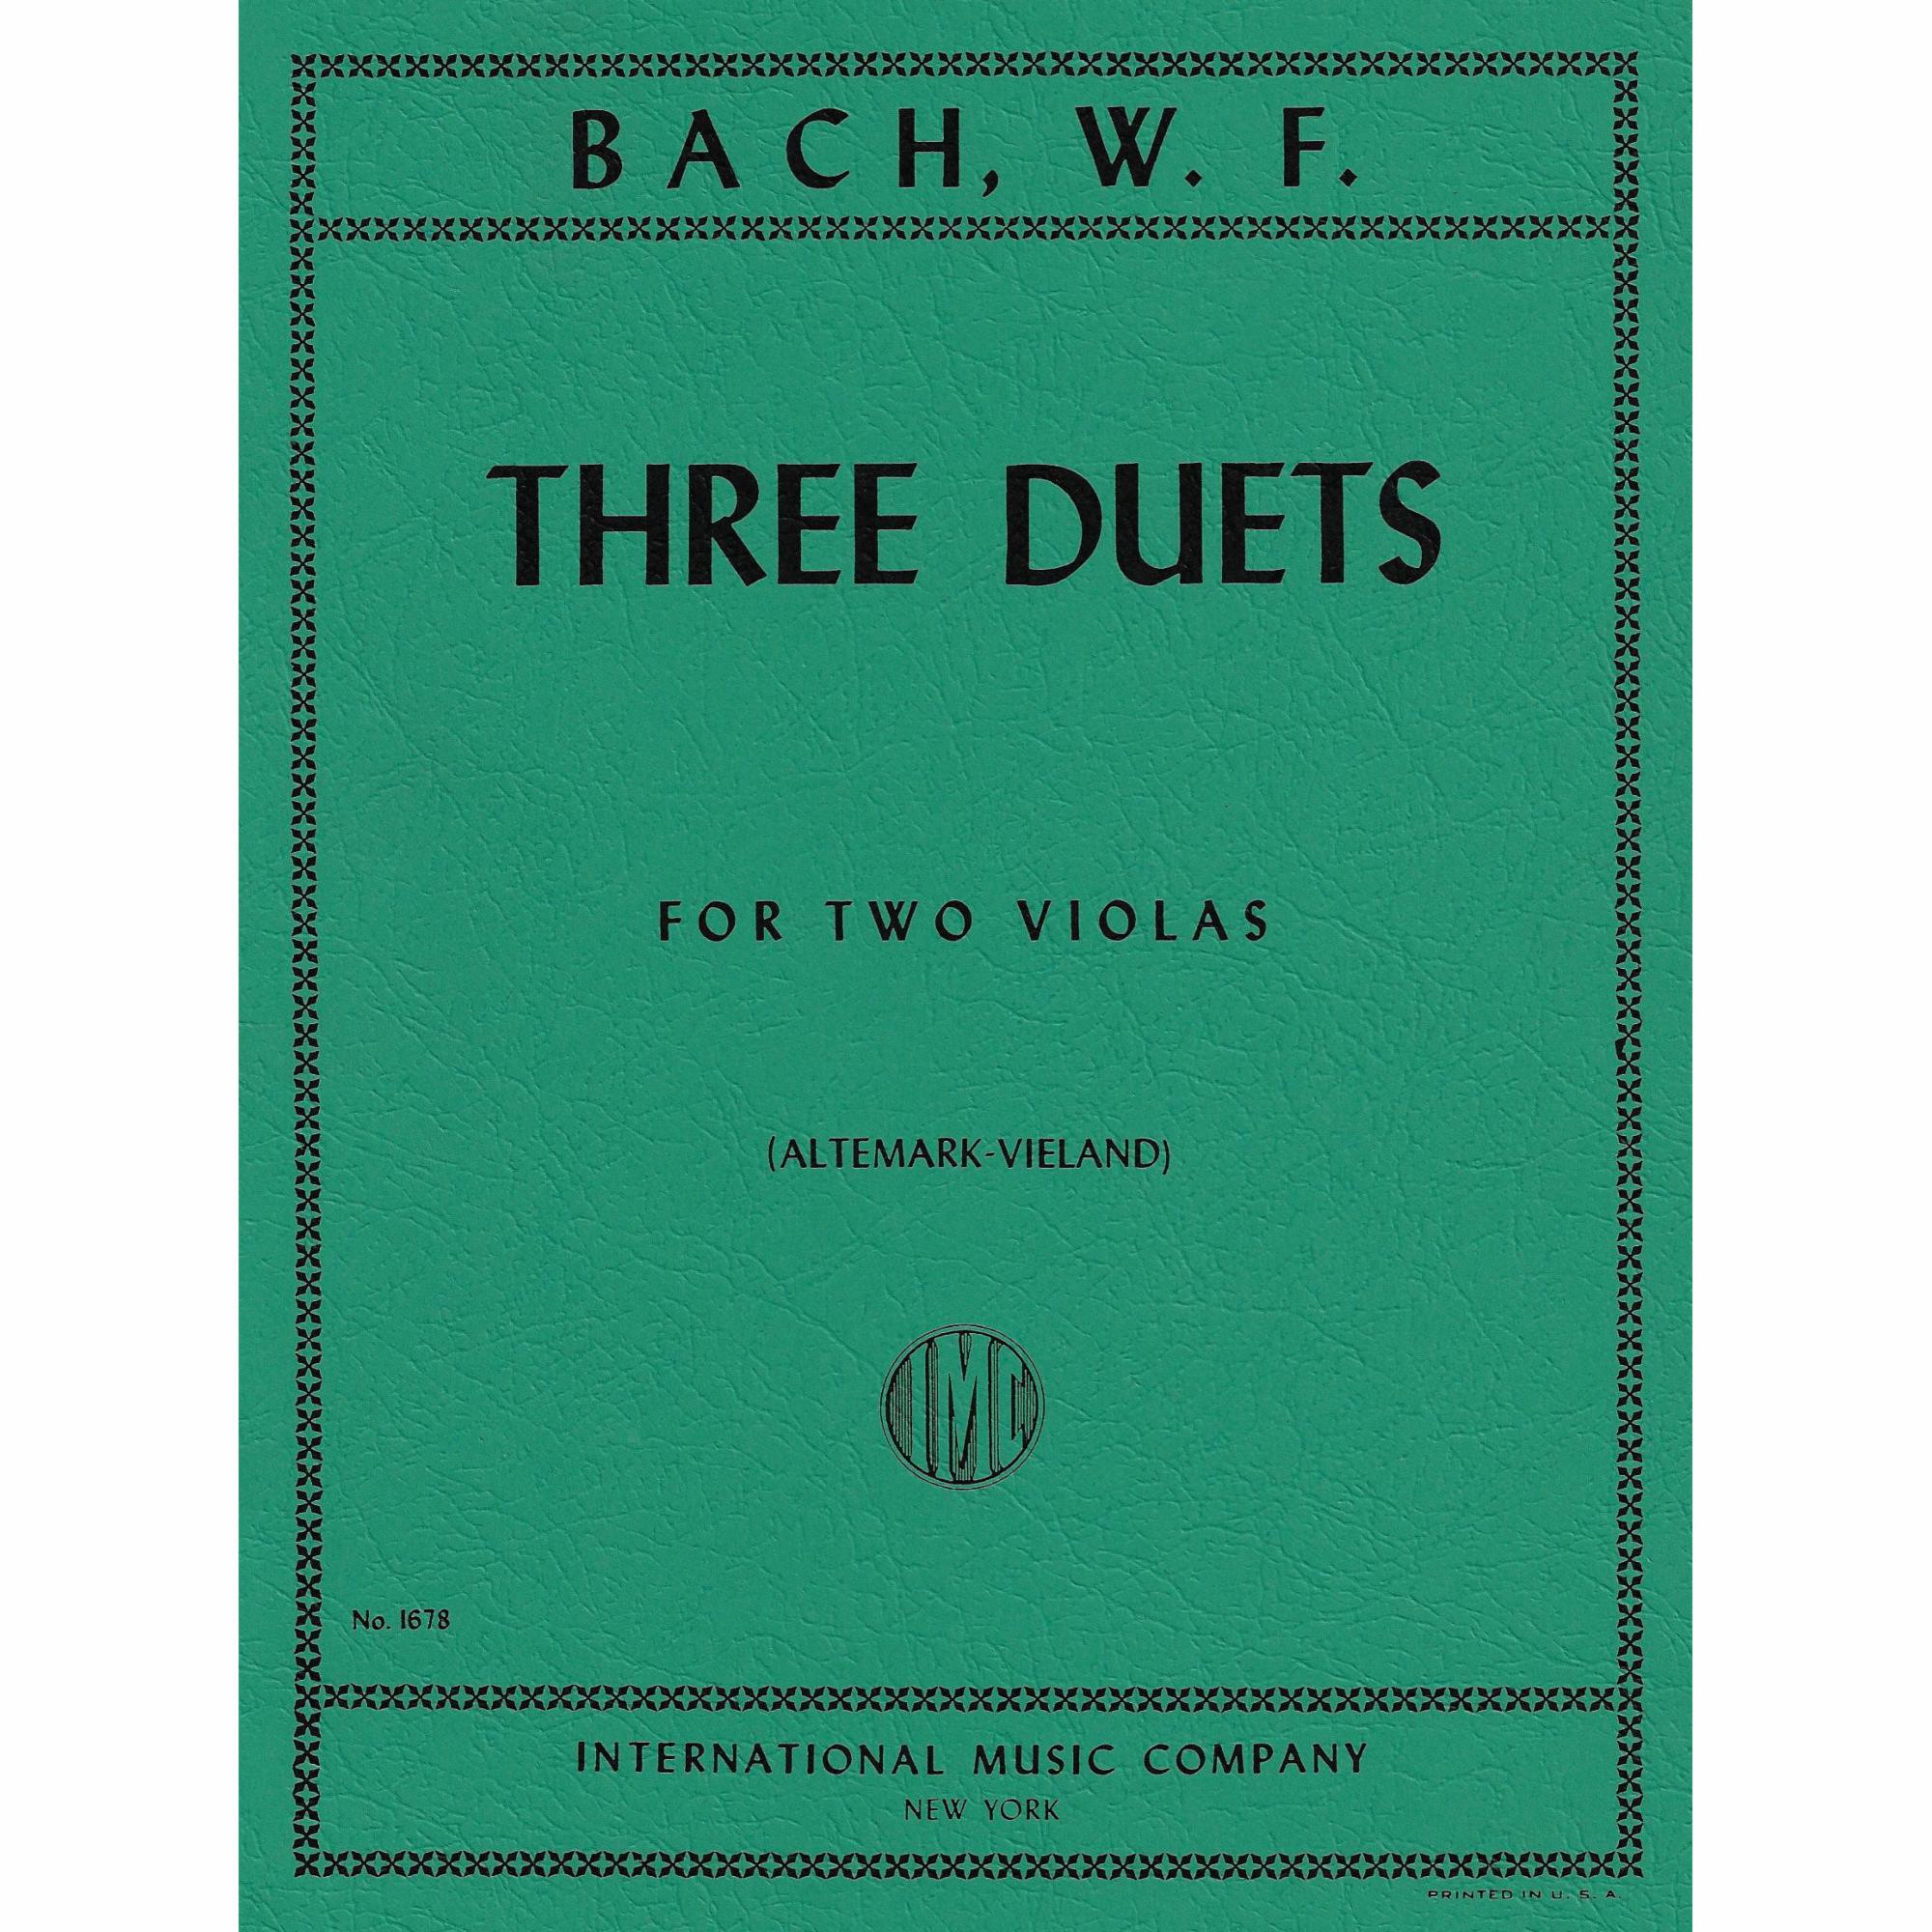 W. F. Bach -- Three Duets for Two Violas